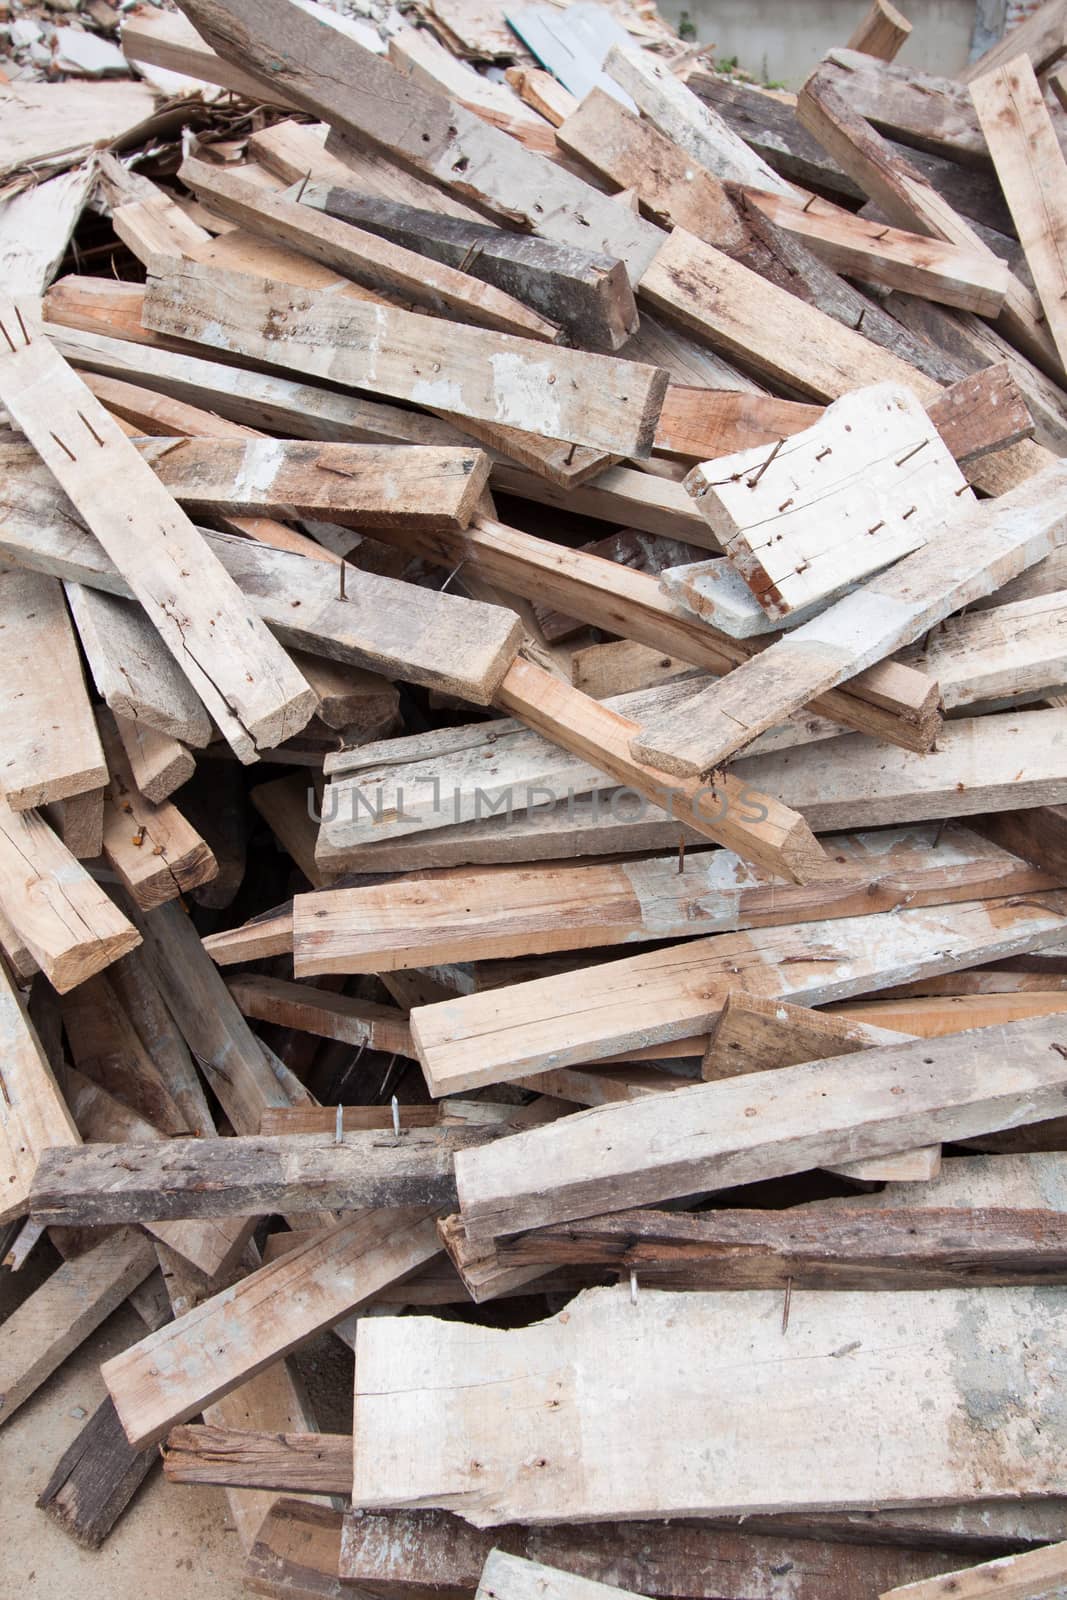 Waste wood pile texture.jpg by kritsada1992